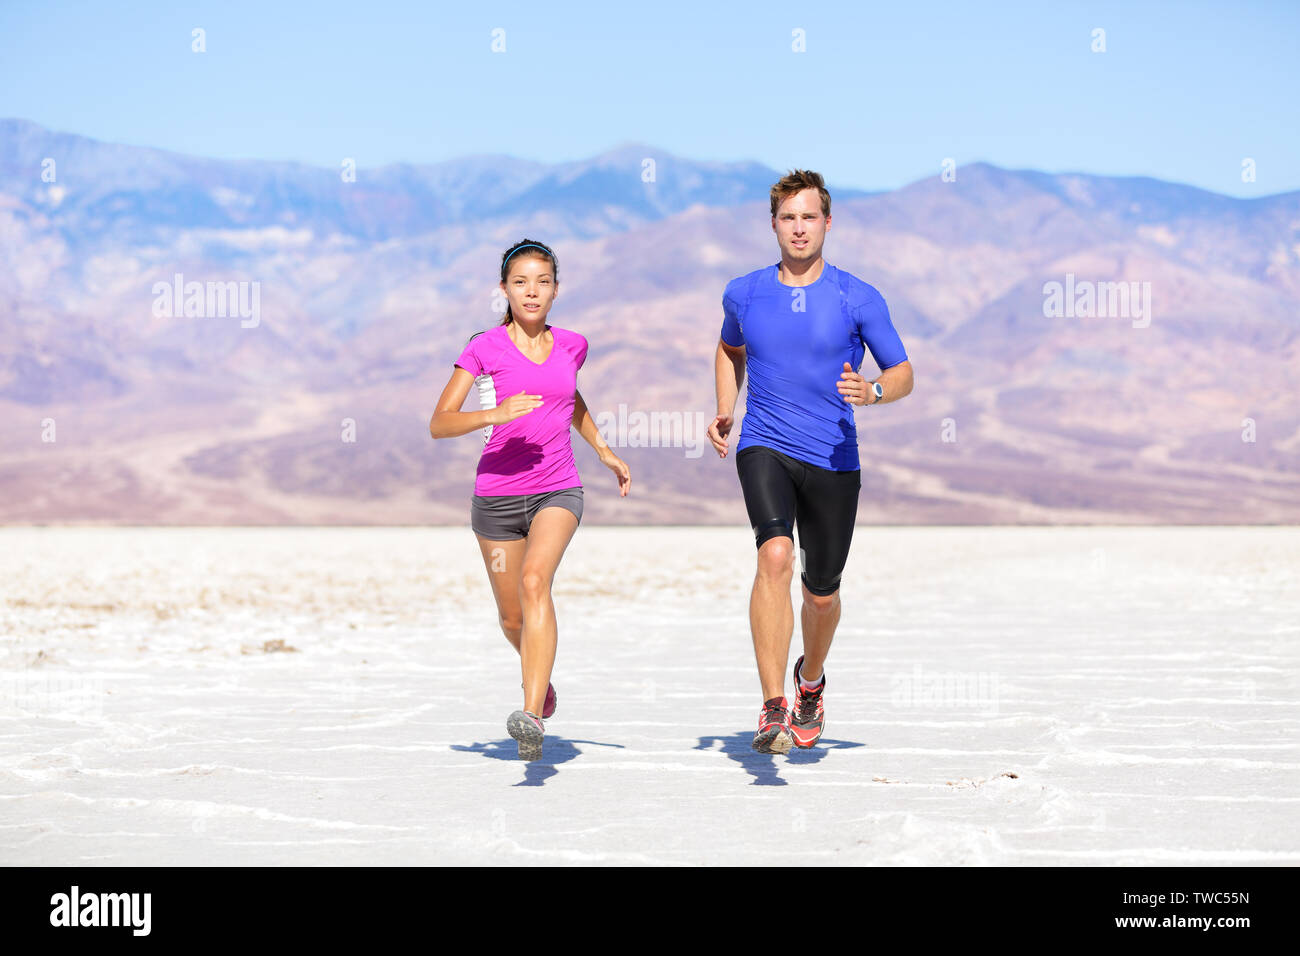 Fitness Sport Paar draußen joggen laufen auf den Weg in die Wüste Landschaft. Stockfoto